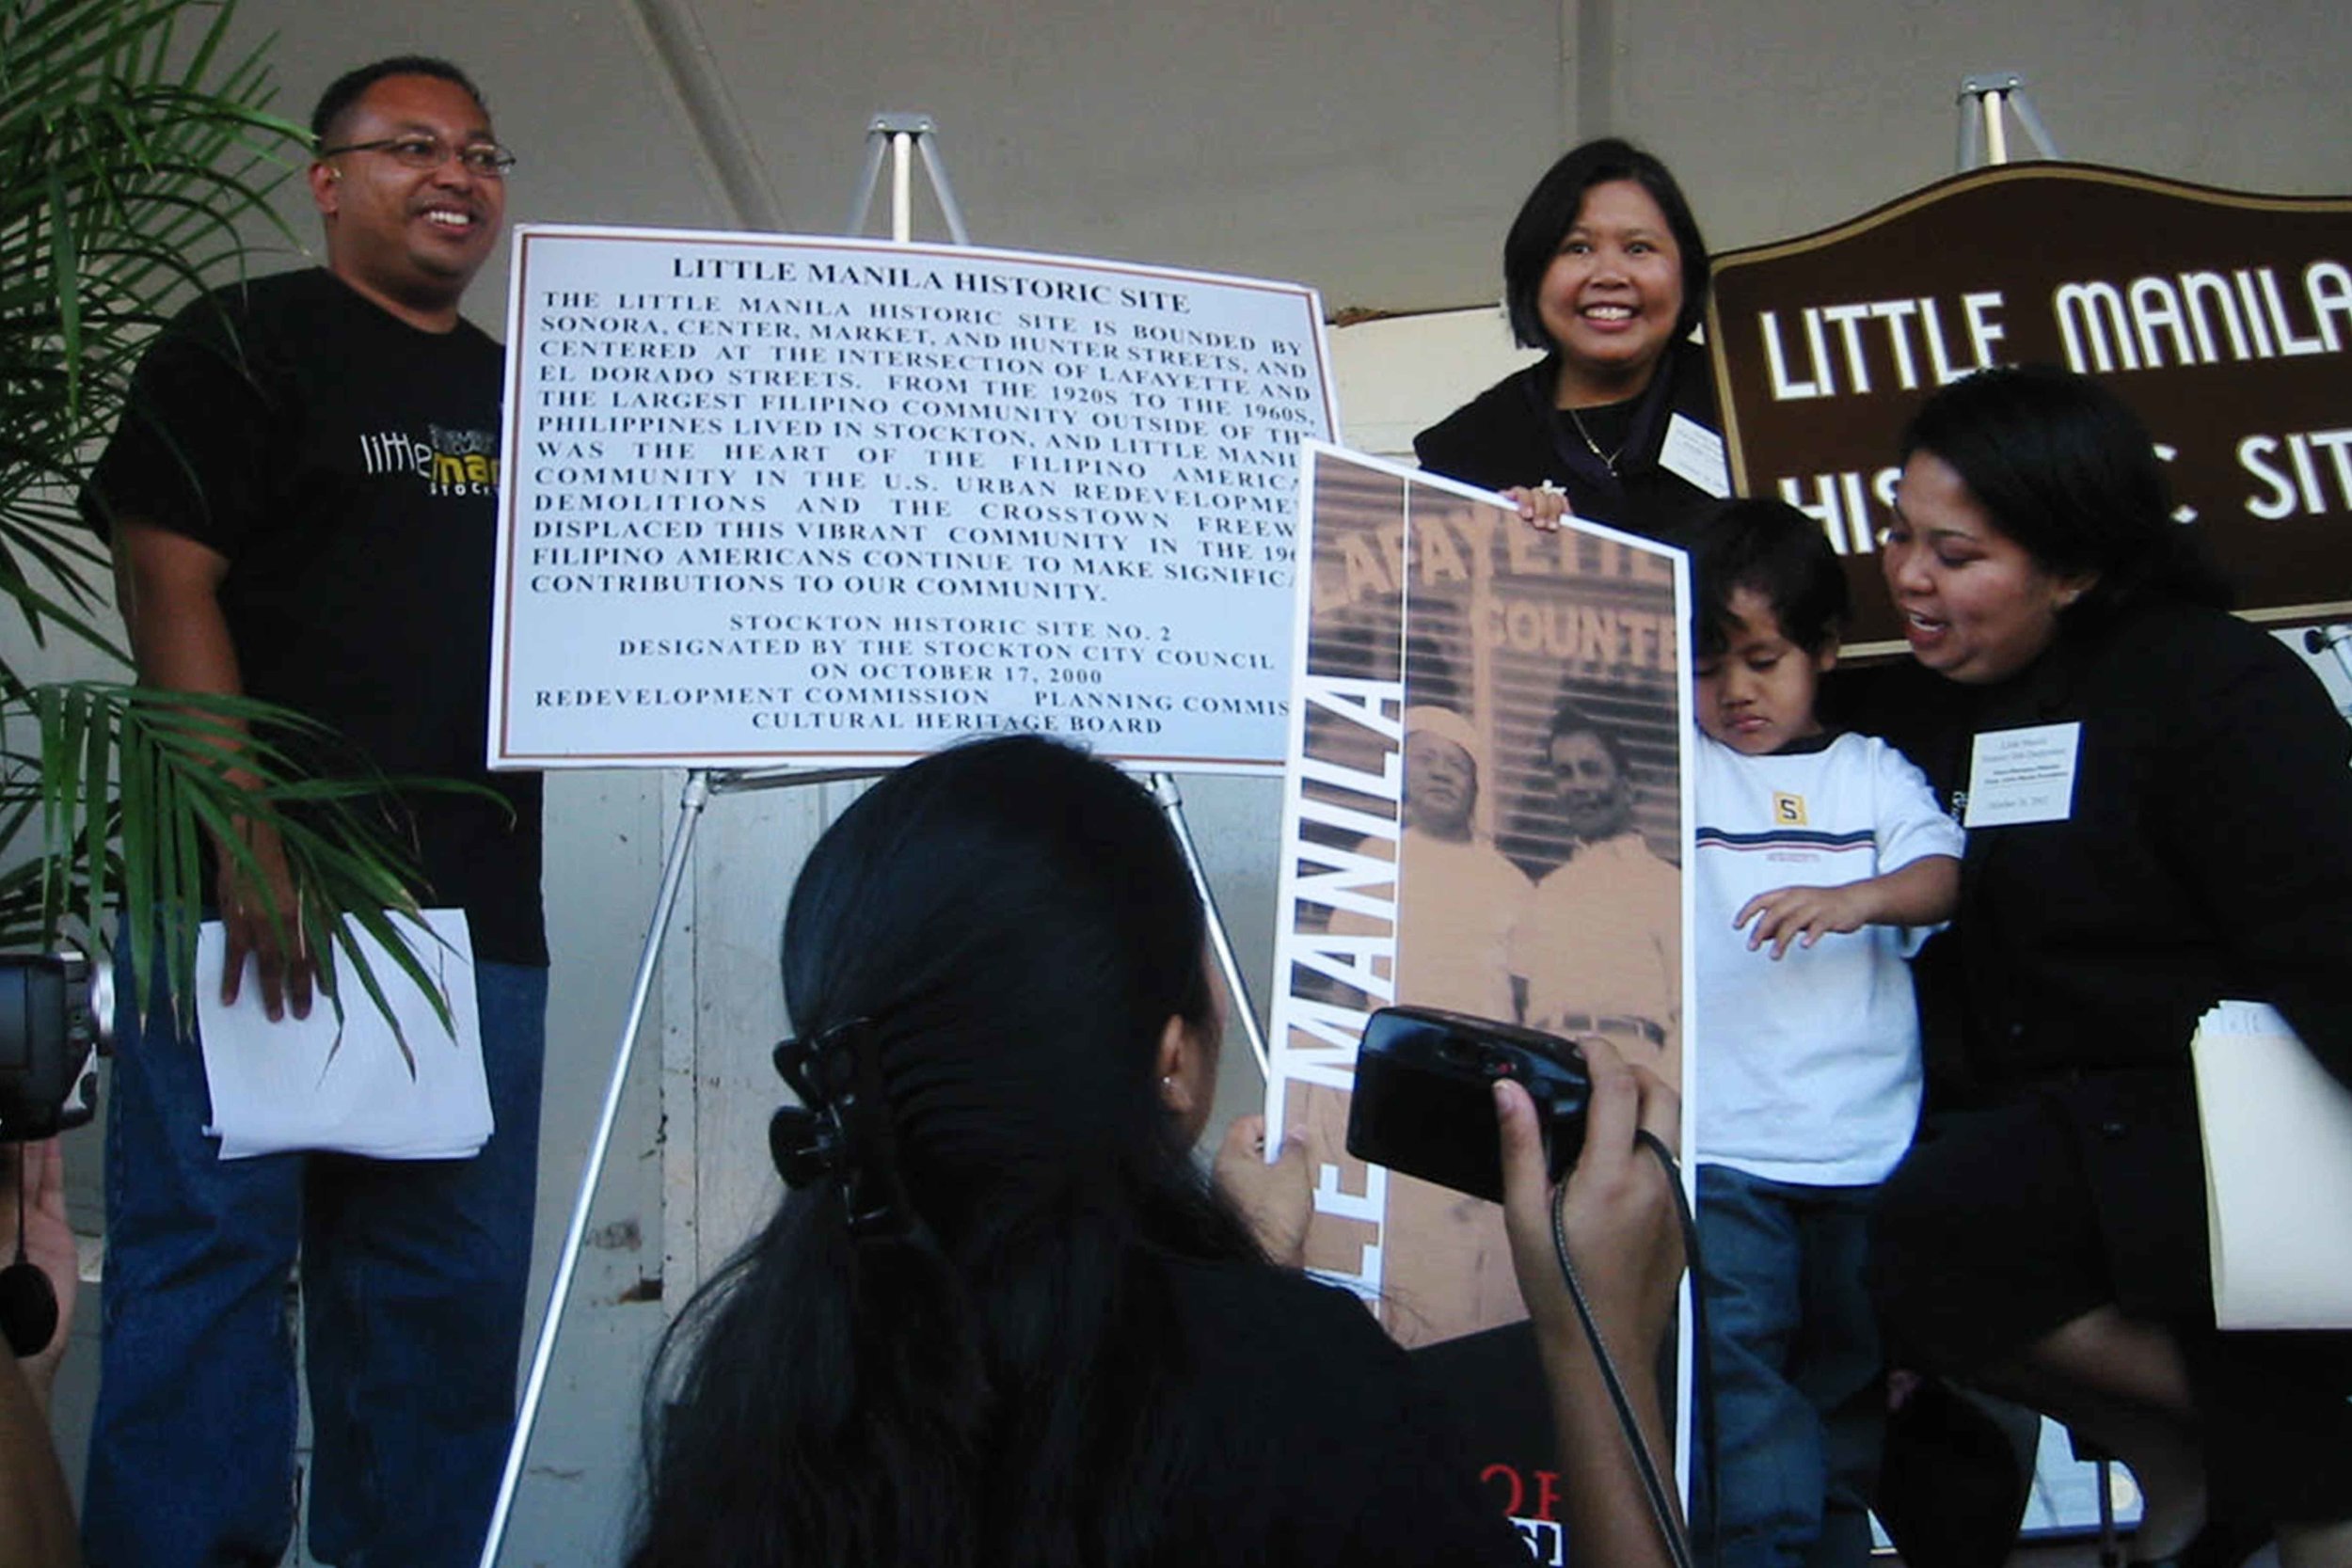  Little Manila Rising co-founders Dillon Delvo (far left) and Dawn Bohulano Mabalon (far right) at the dedication event for the Little Manila Historic Site in Stockton, California. Courtesy of Dillon Delvo.    